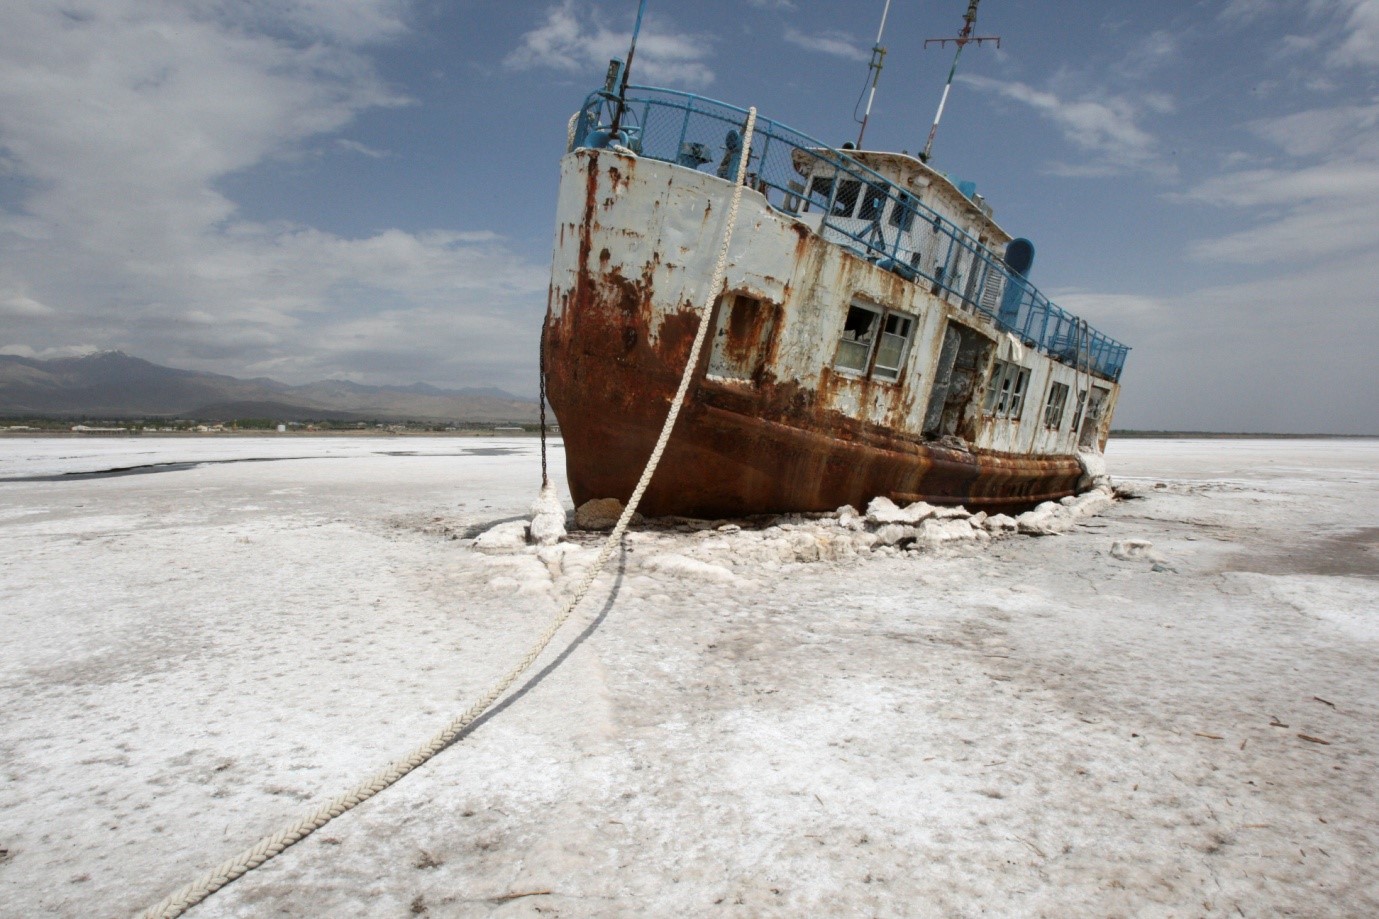 خاورمیانه - کشتی که در نمکزار دریاچه ارومیه مانده و زنگ زده